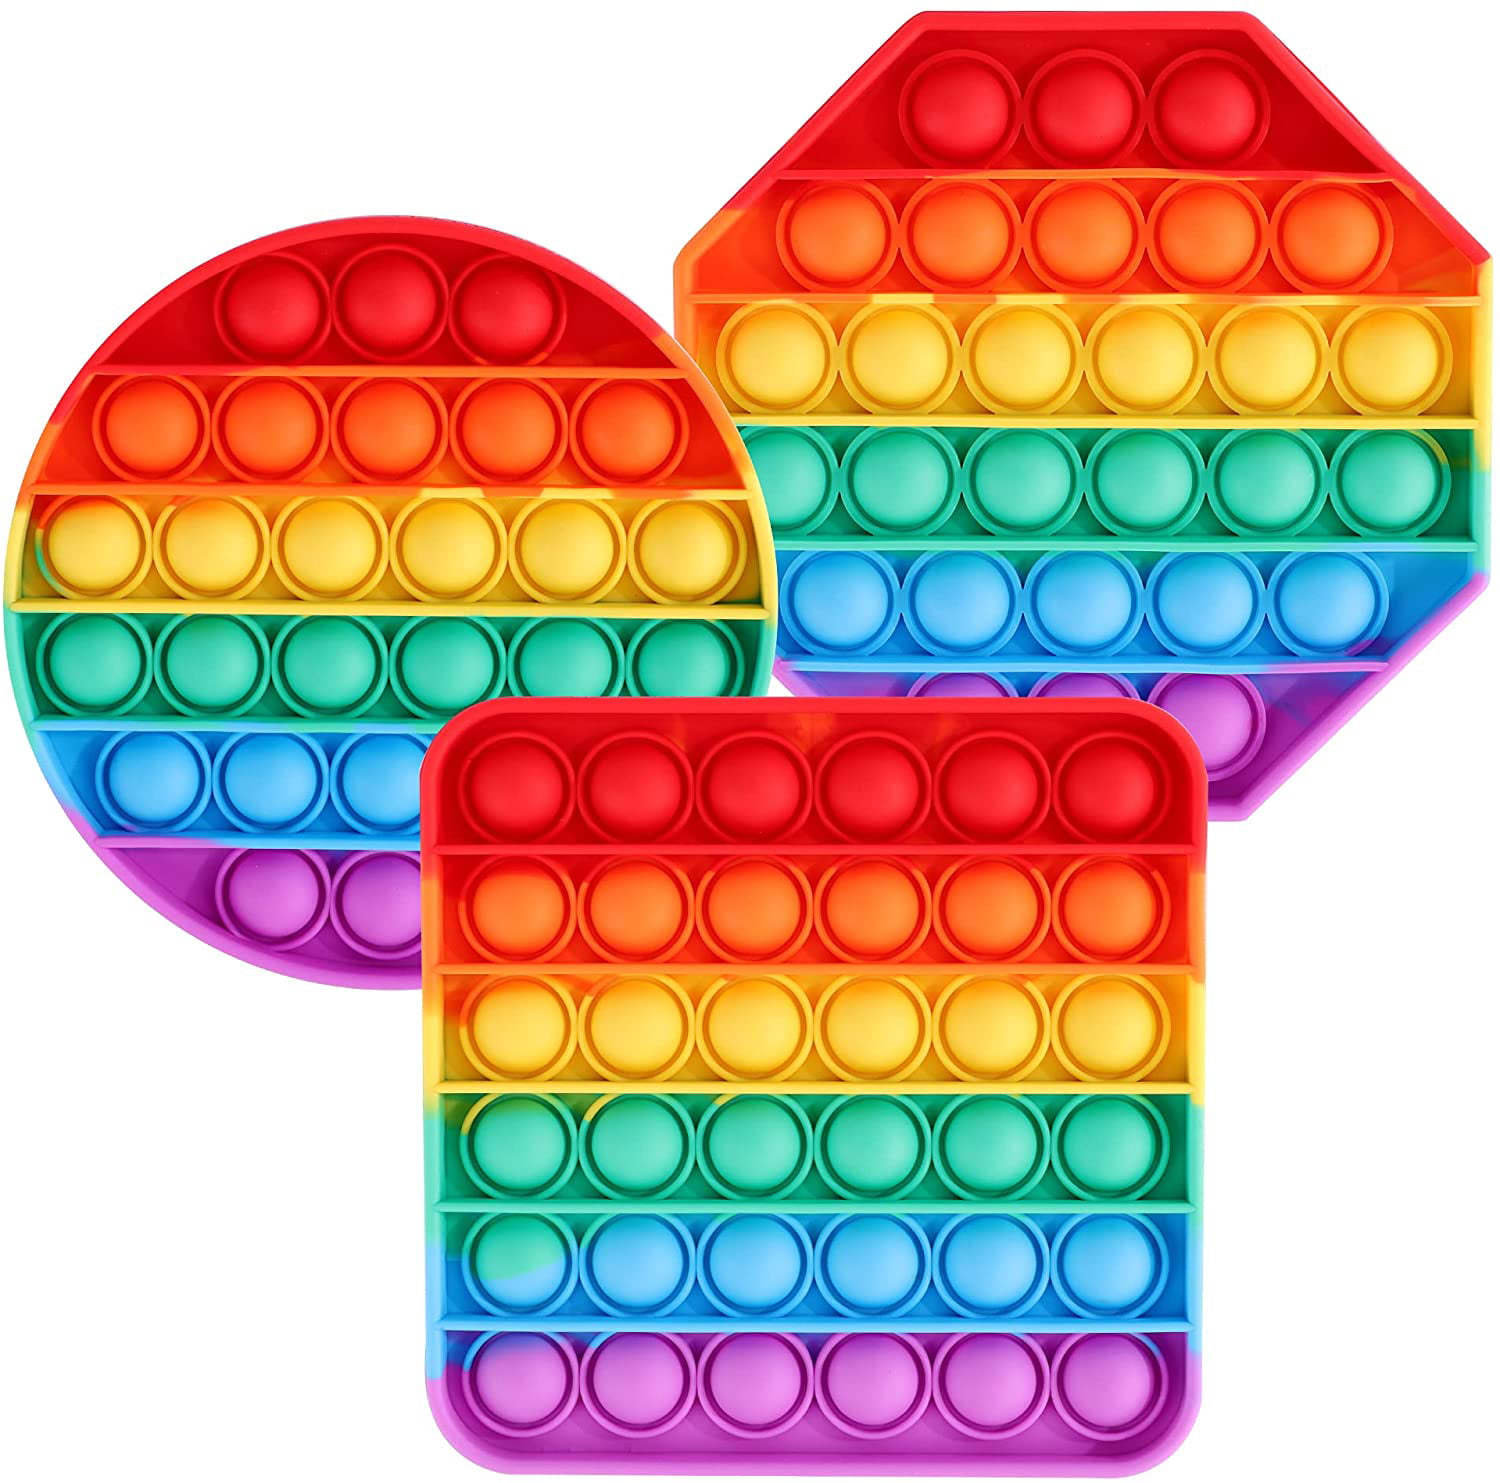 Details about   Rainbow Push Pop Bubble Fidget Sensory Toy Stress Reliever POP Game Kids Game AU 